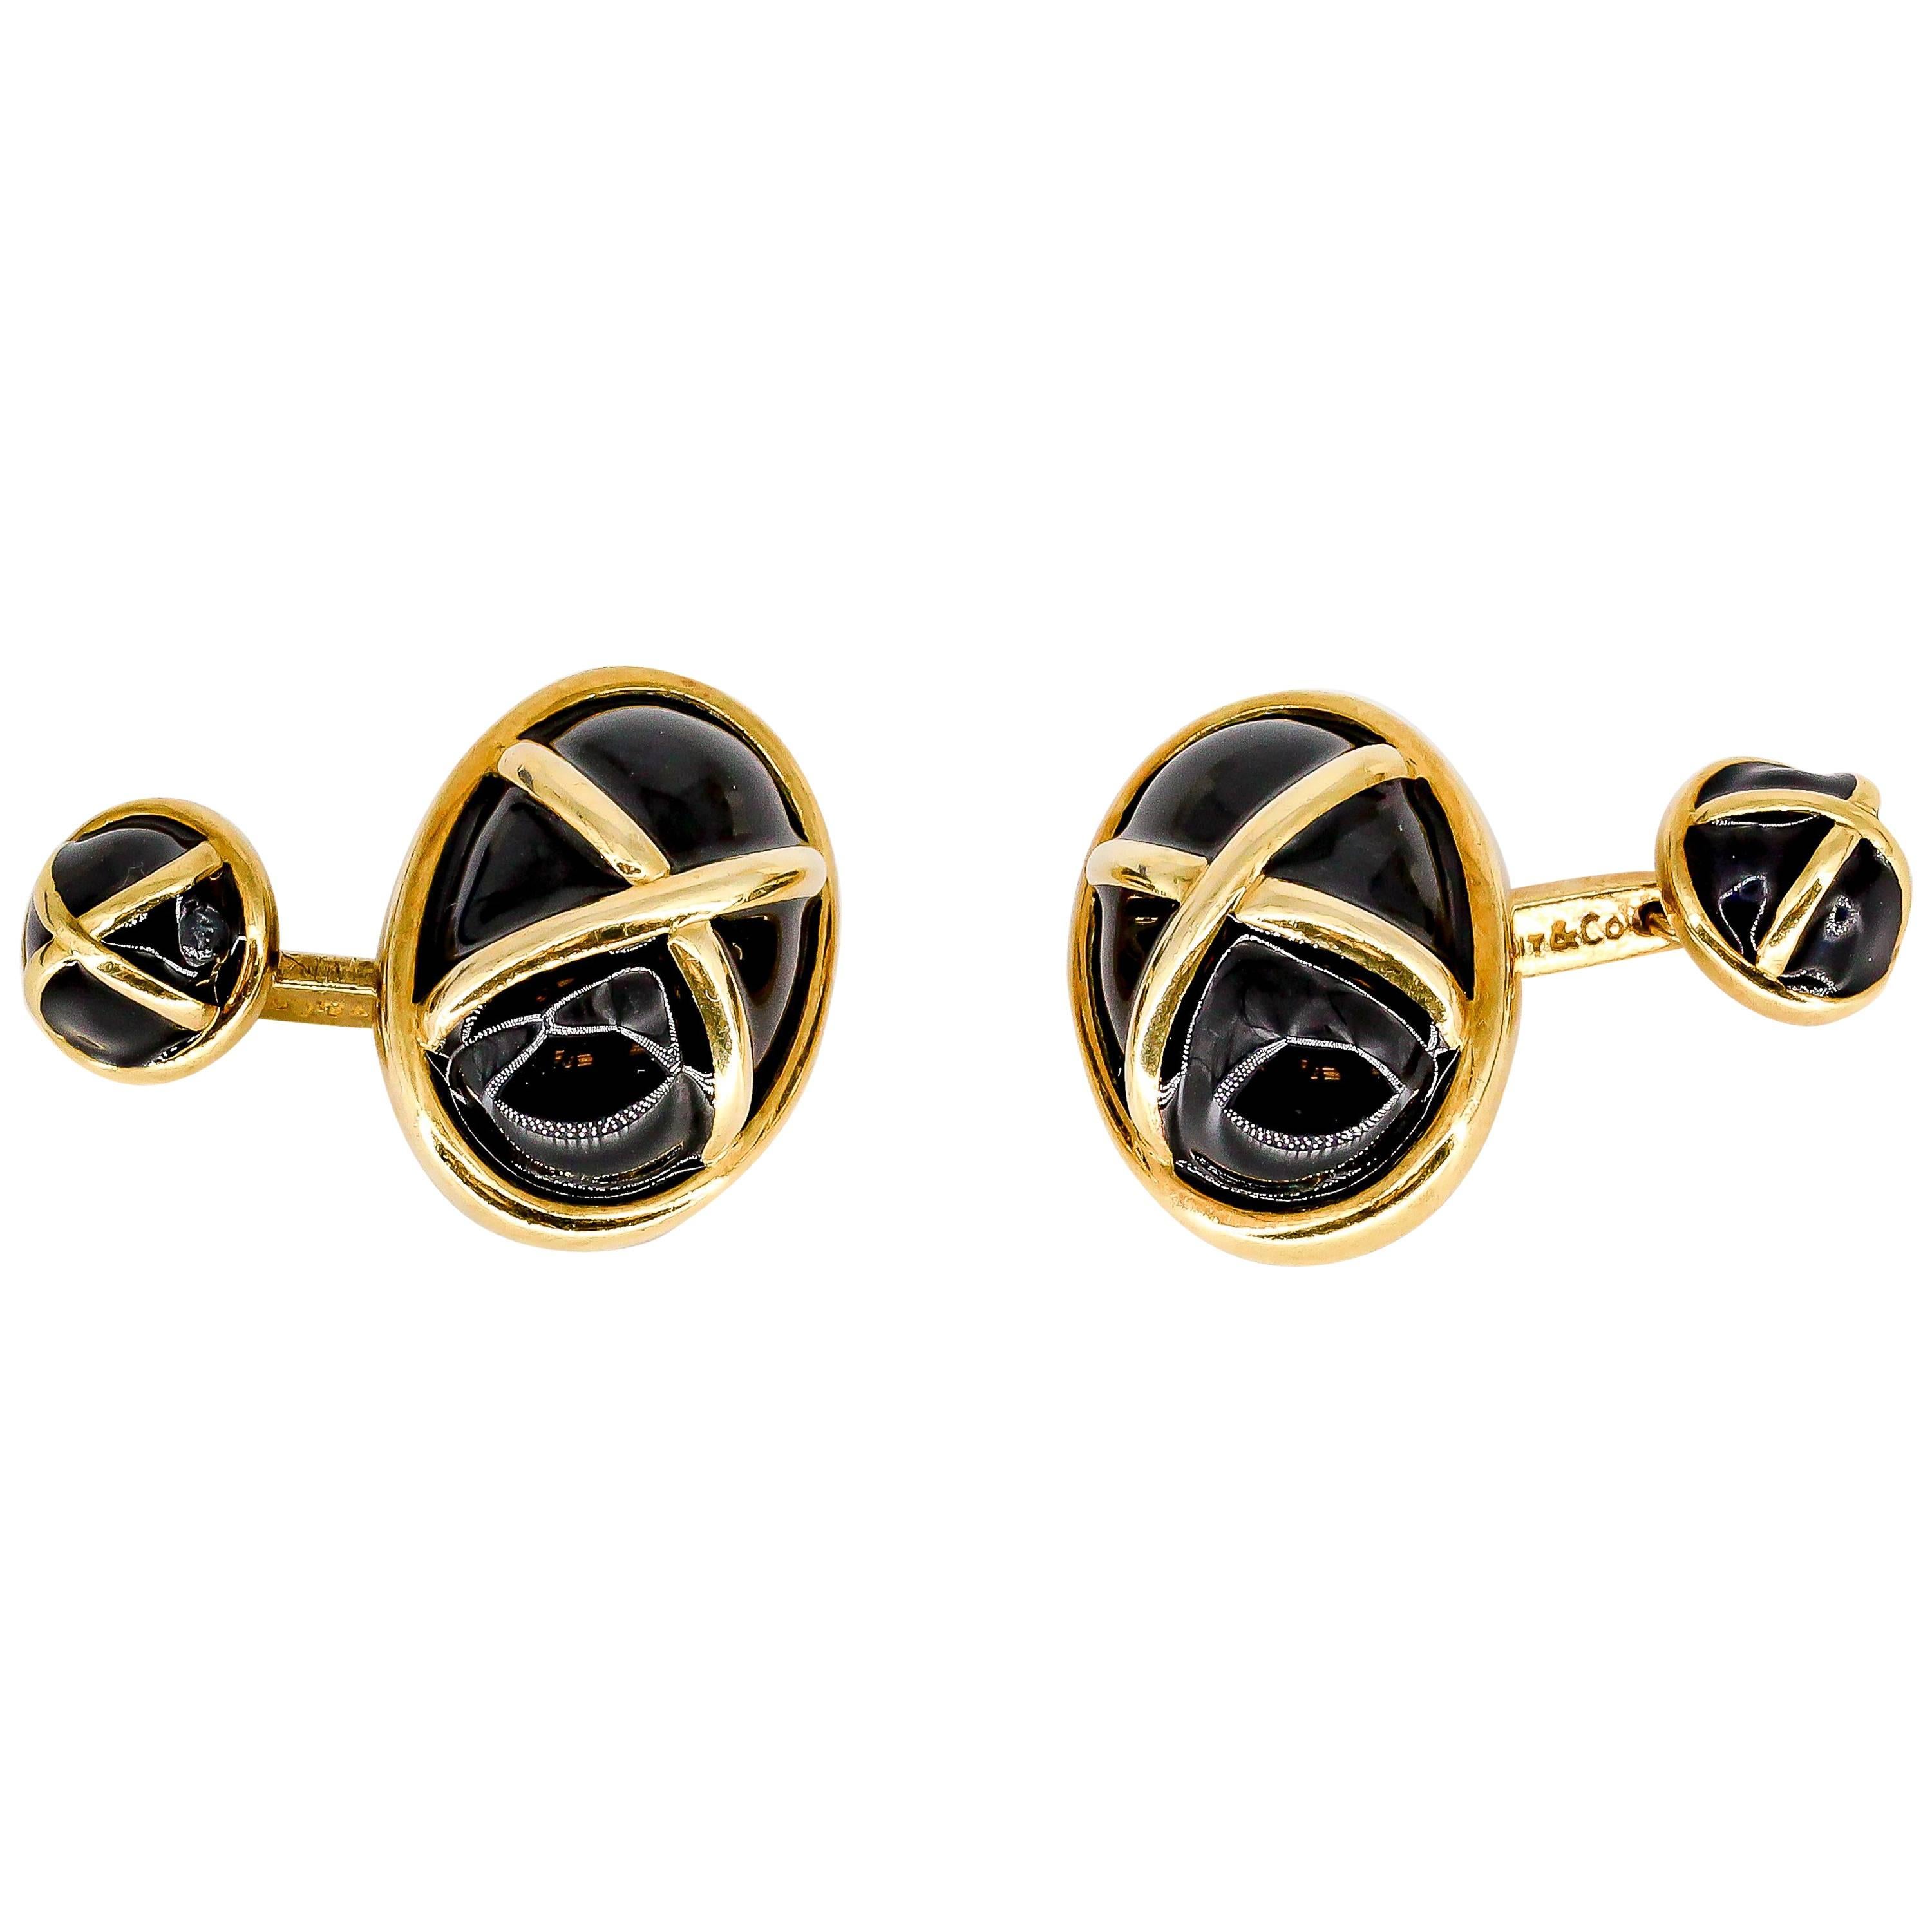 Tiffany & Co. Black Enamel and Gold Cufflinks